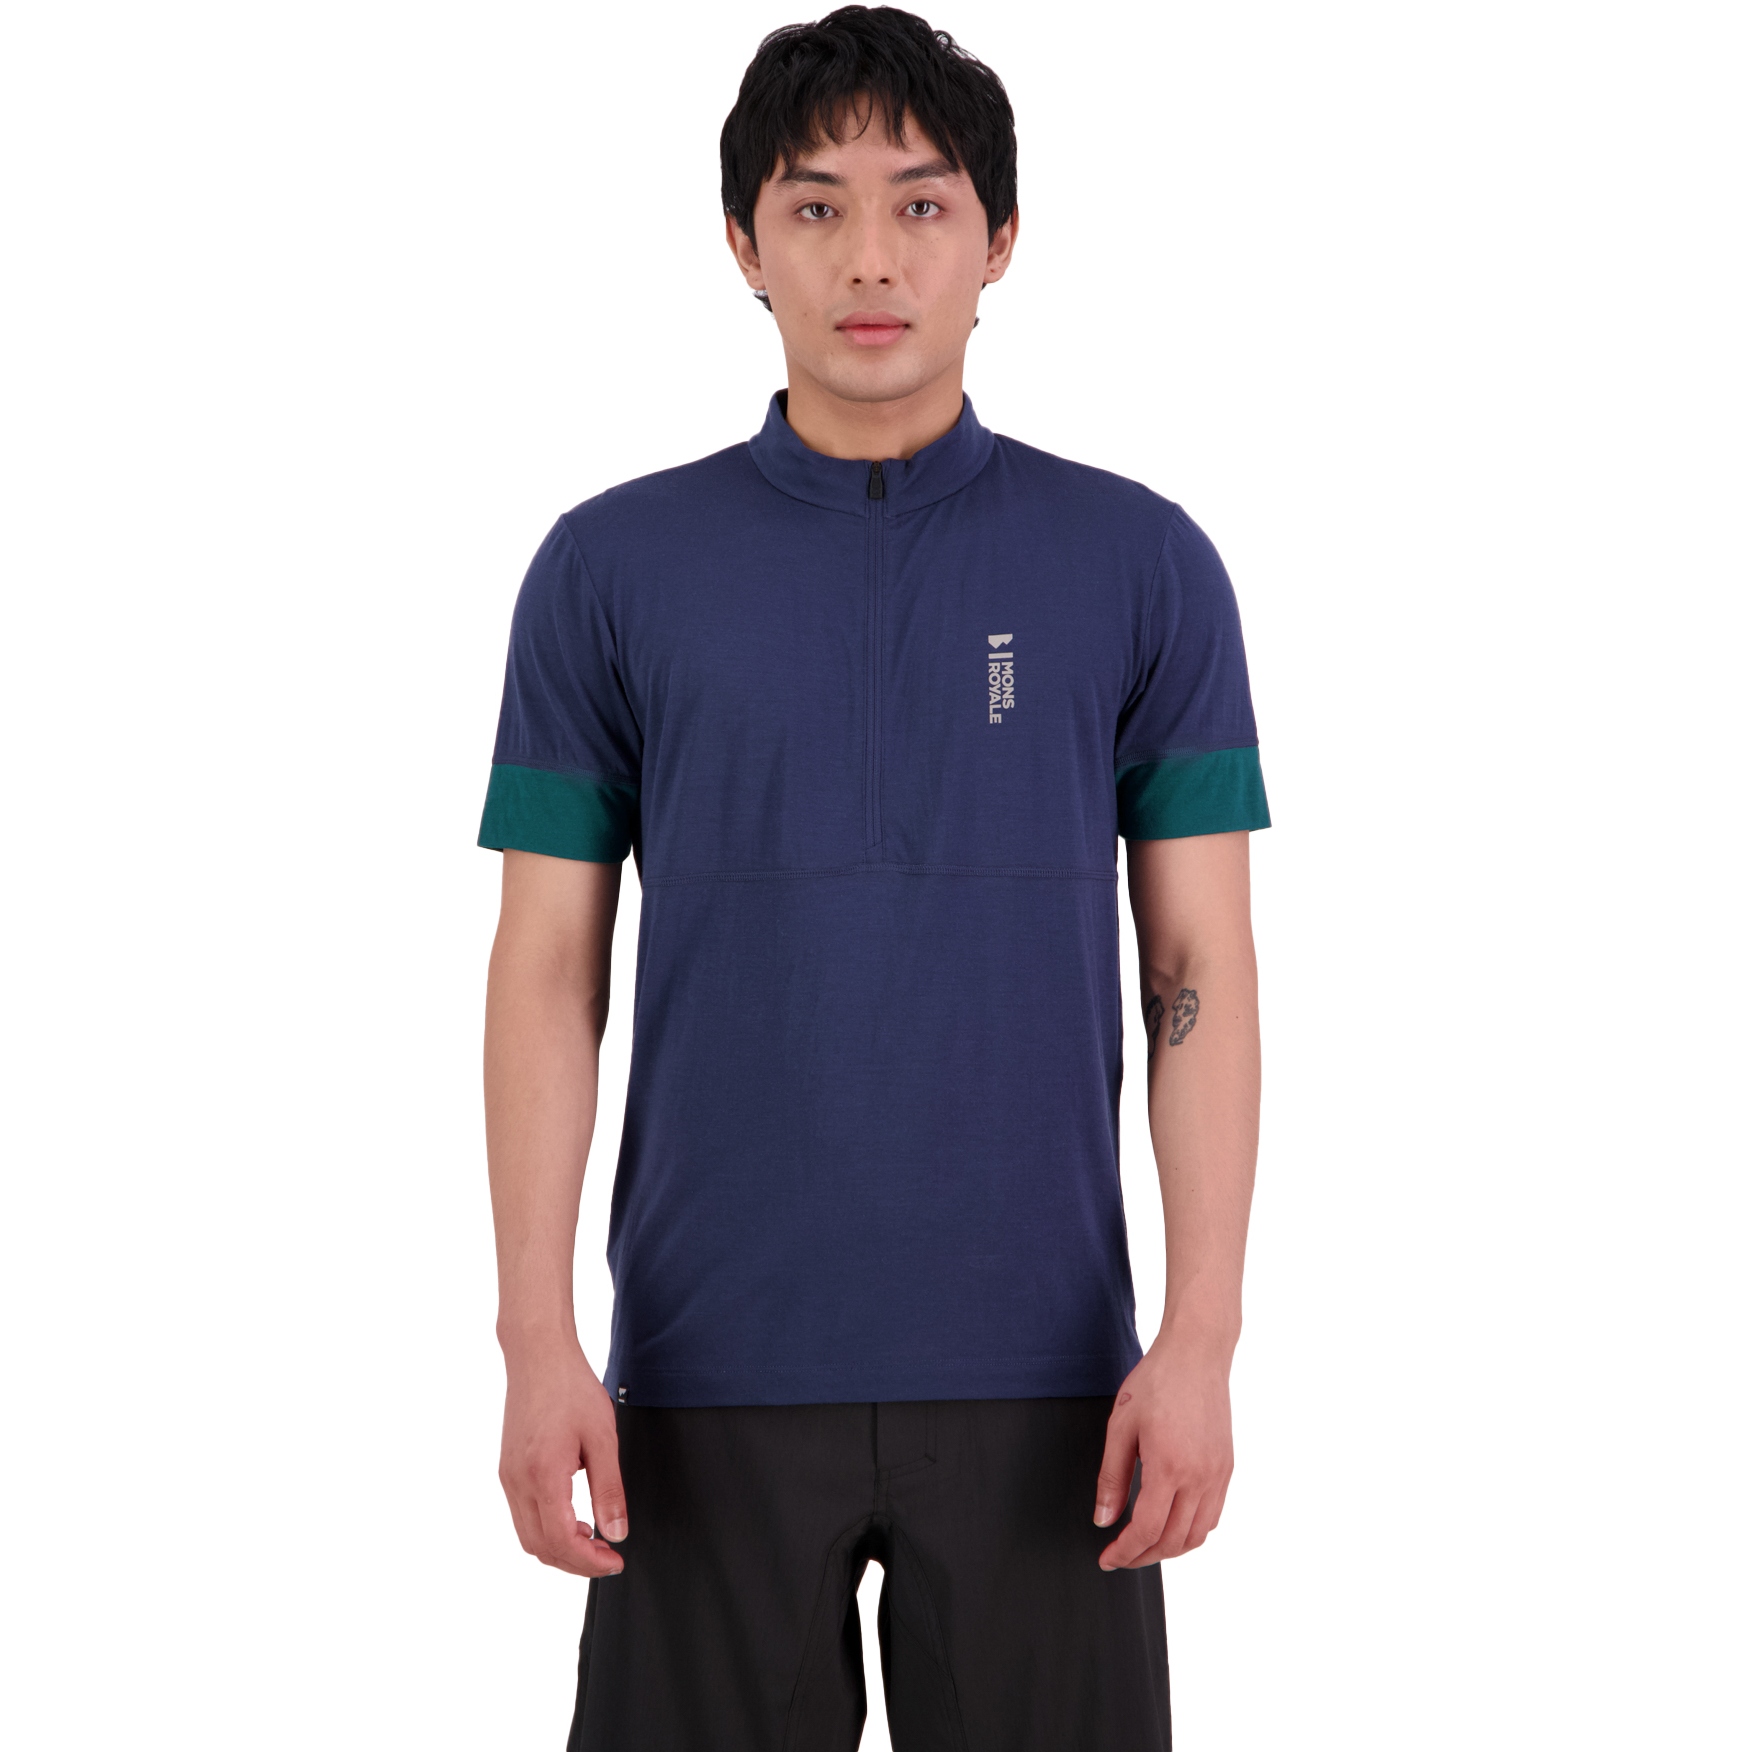 Produktbild von Mons Royale Cadence Merino Air-Con Half Zip T-Shirt Herren - evergreen / midnight